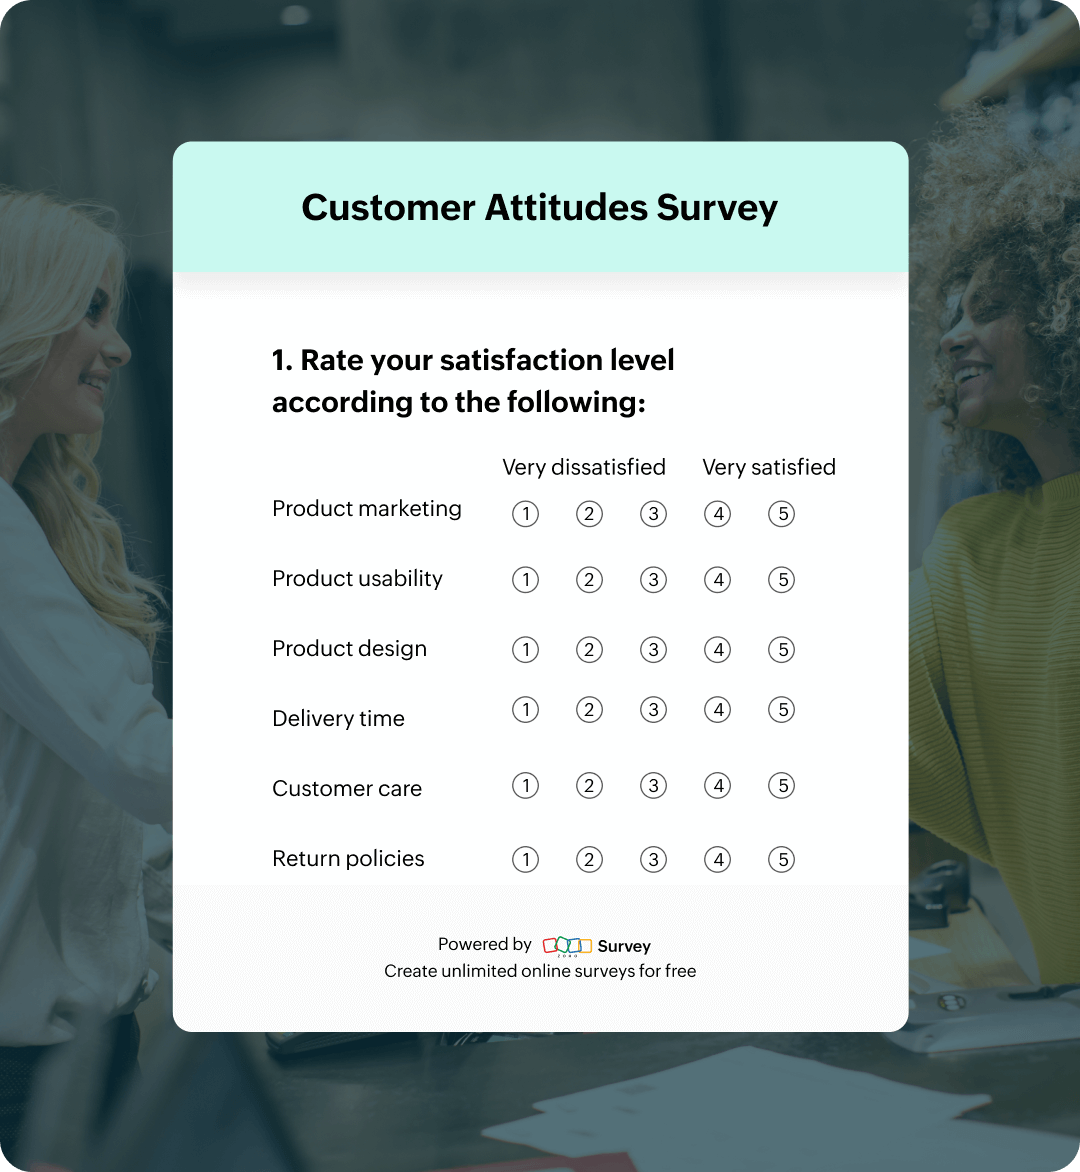 Customer attitudes survey questionnaire template